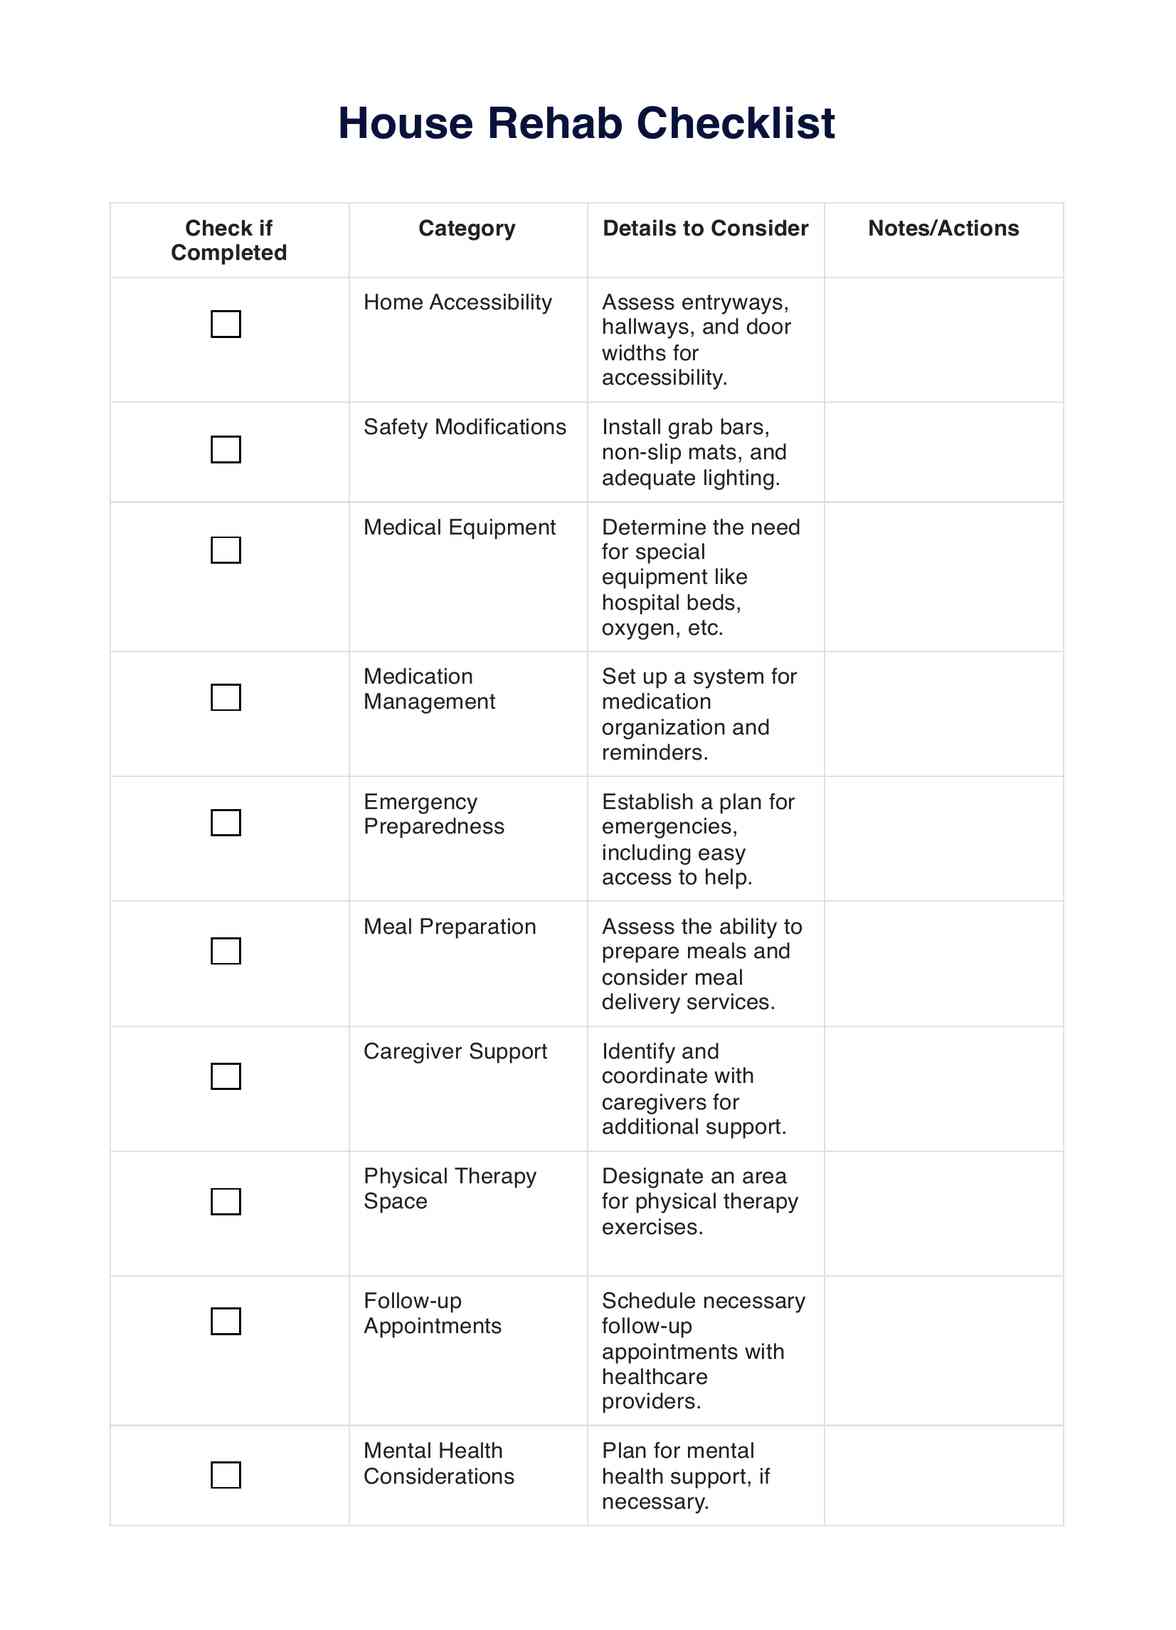 House Rehab Checklist PDF Example